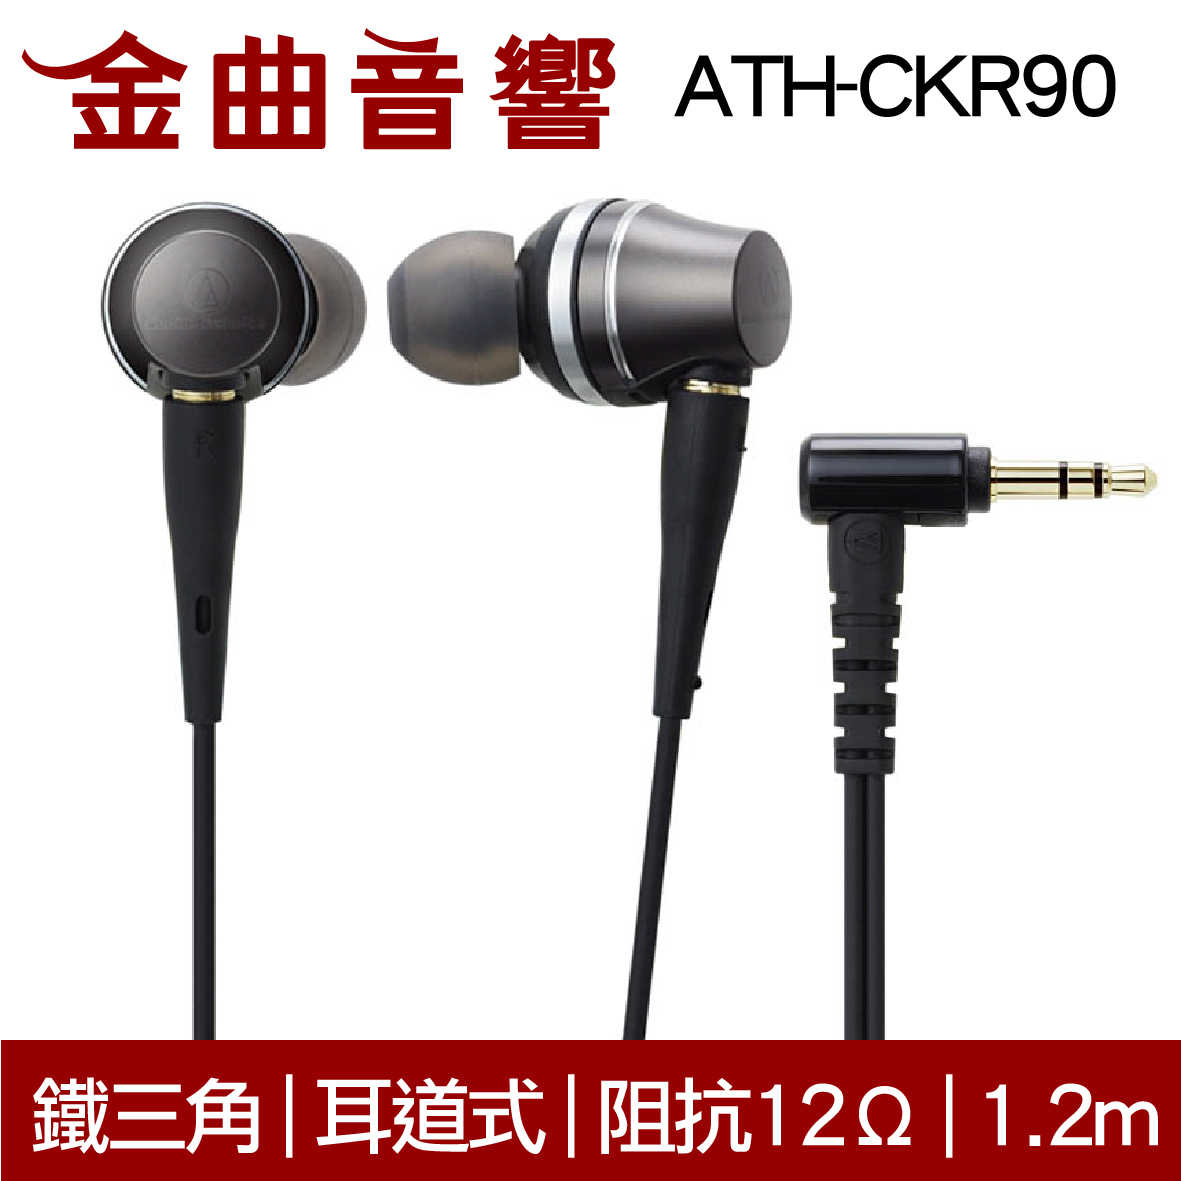 鐵三角ATH-CKR90 耳道式耳機| 金曲音響- 金曲音響-線上購物| 有閑購物